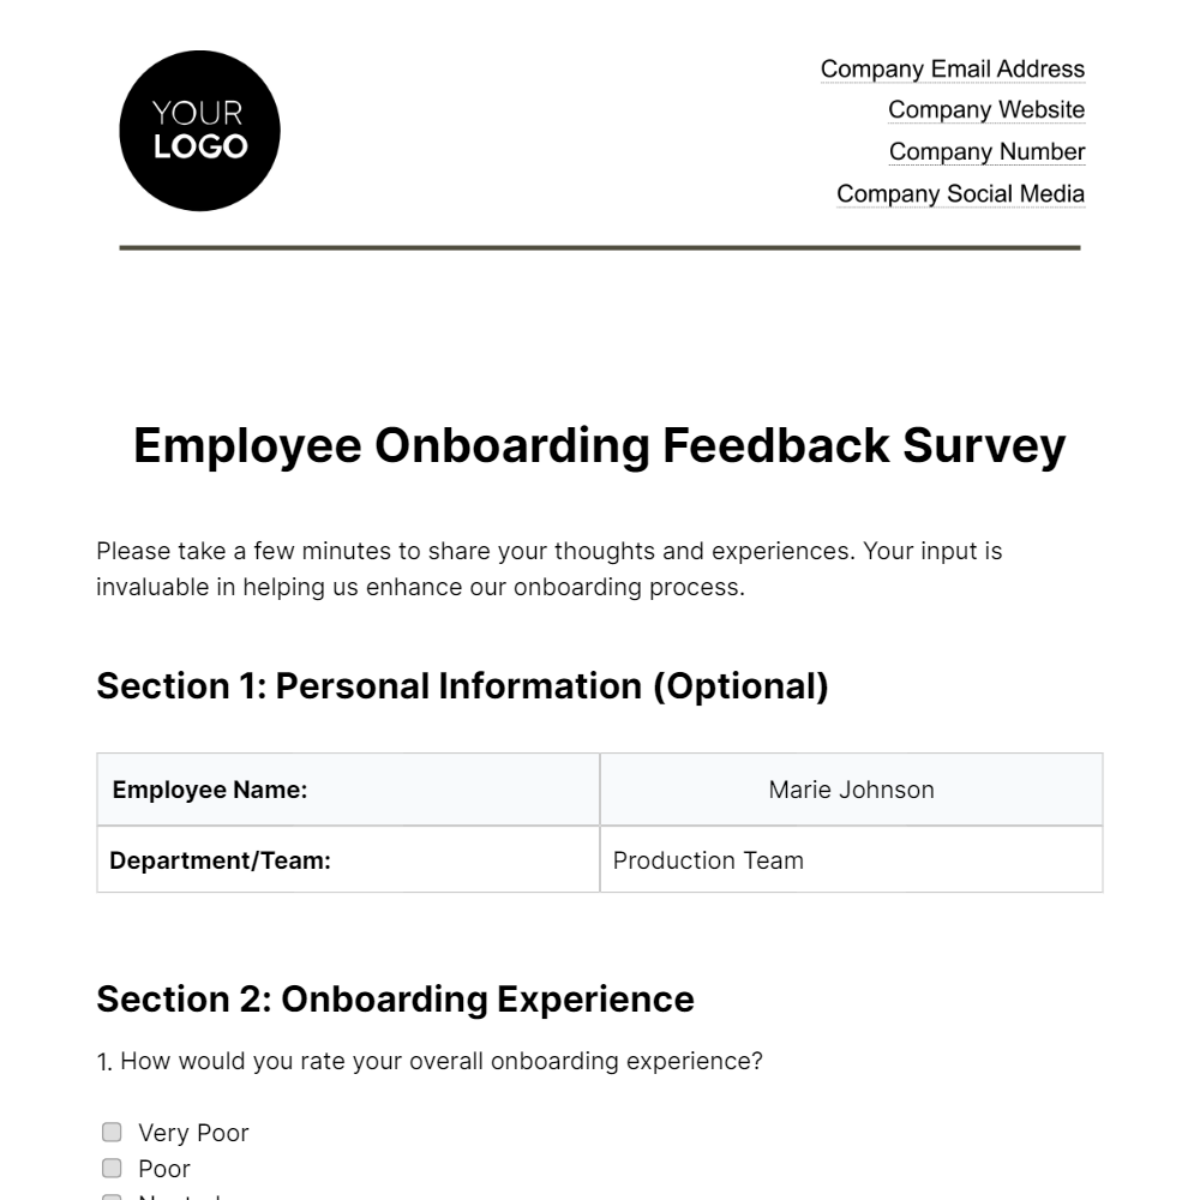 Employee Onboarding Feedback Survey HR Template